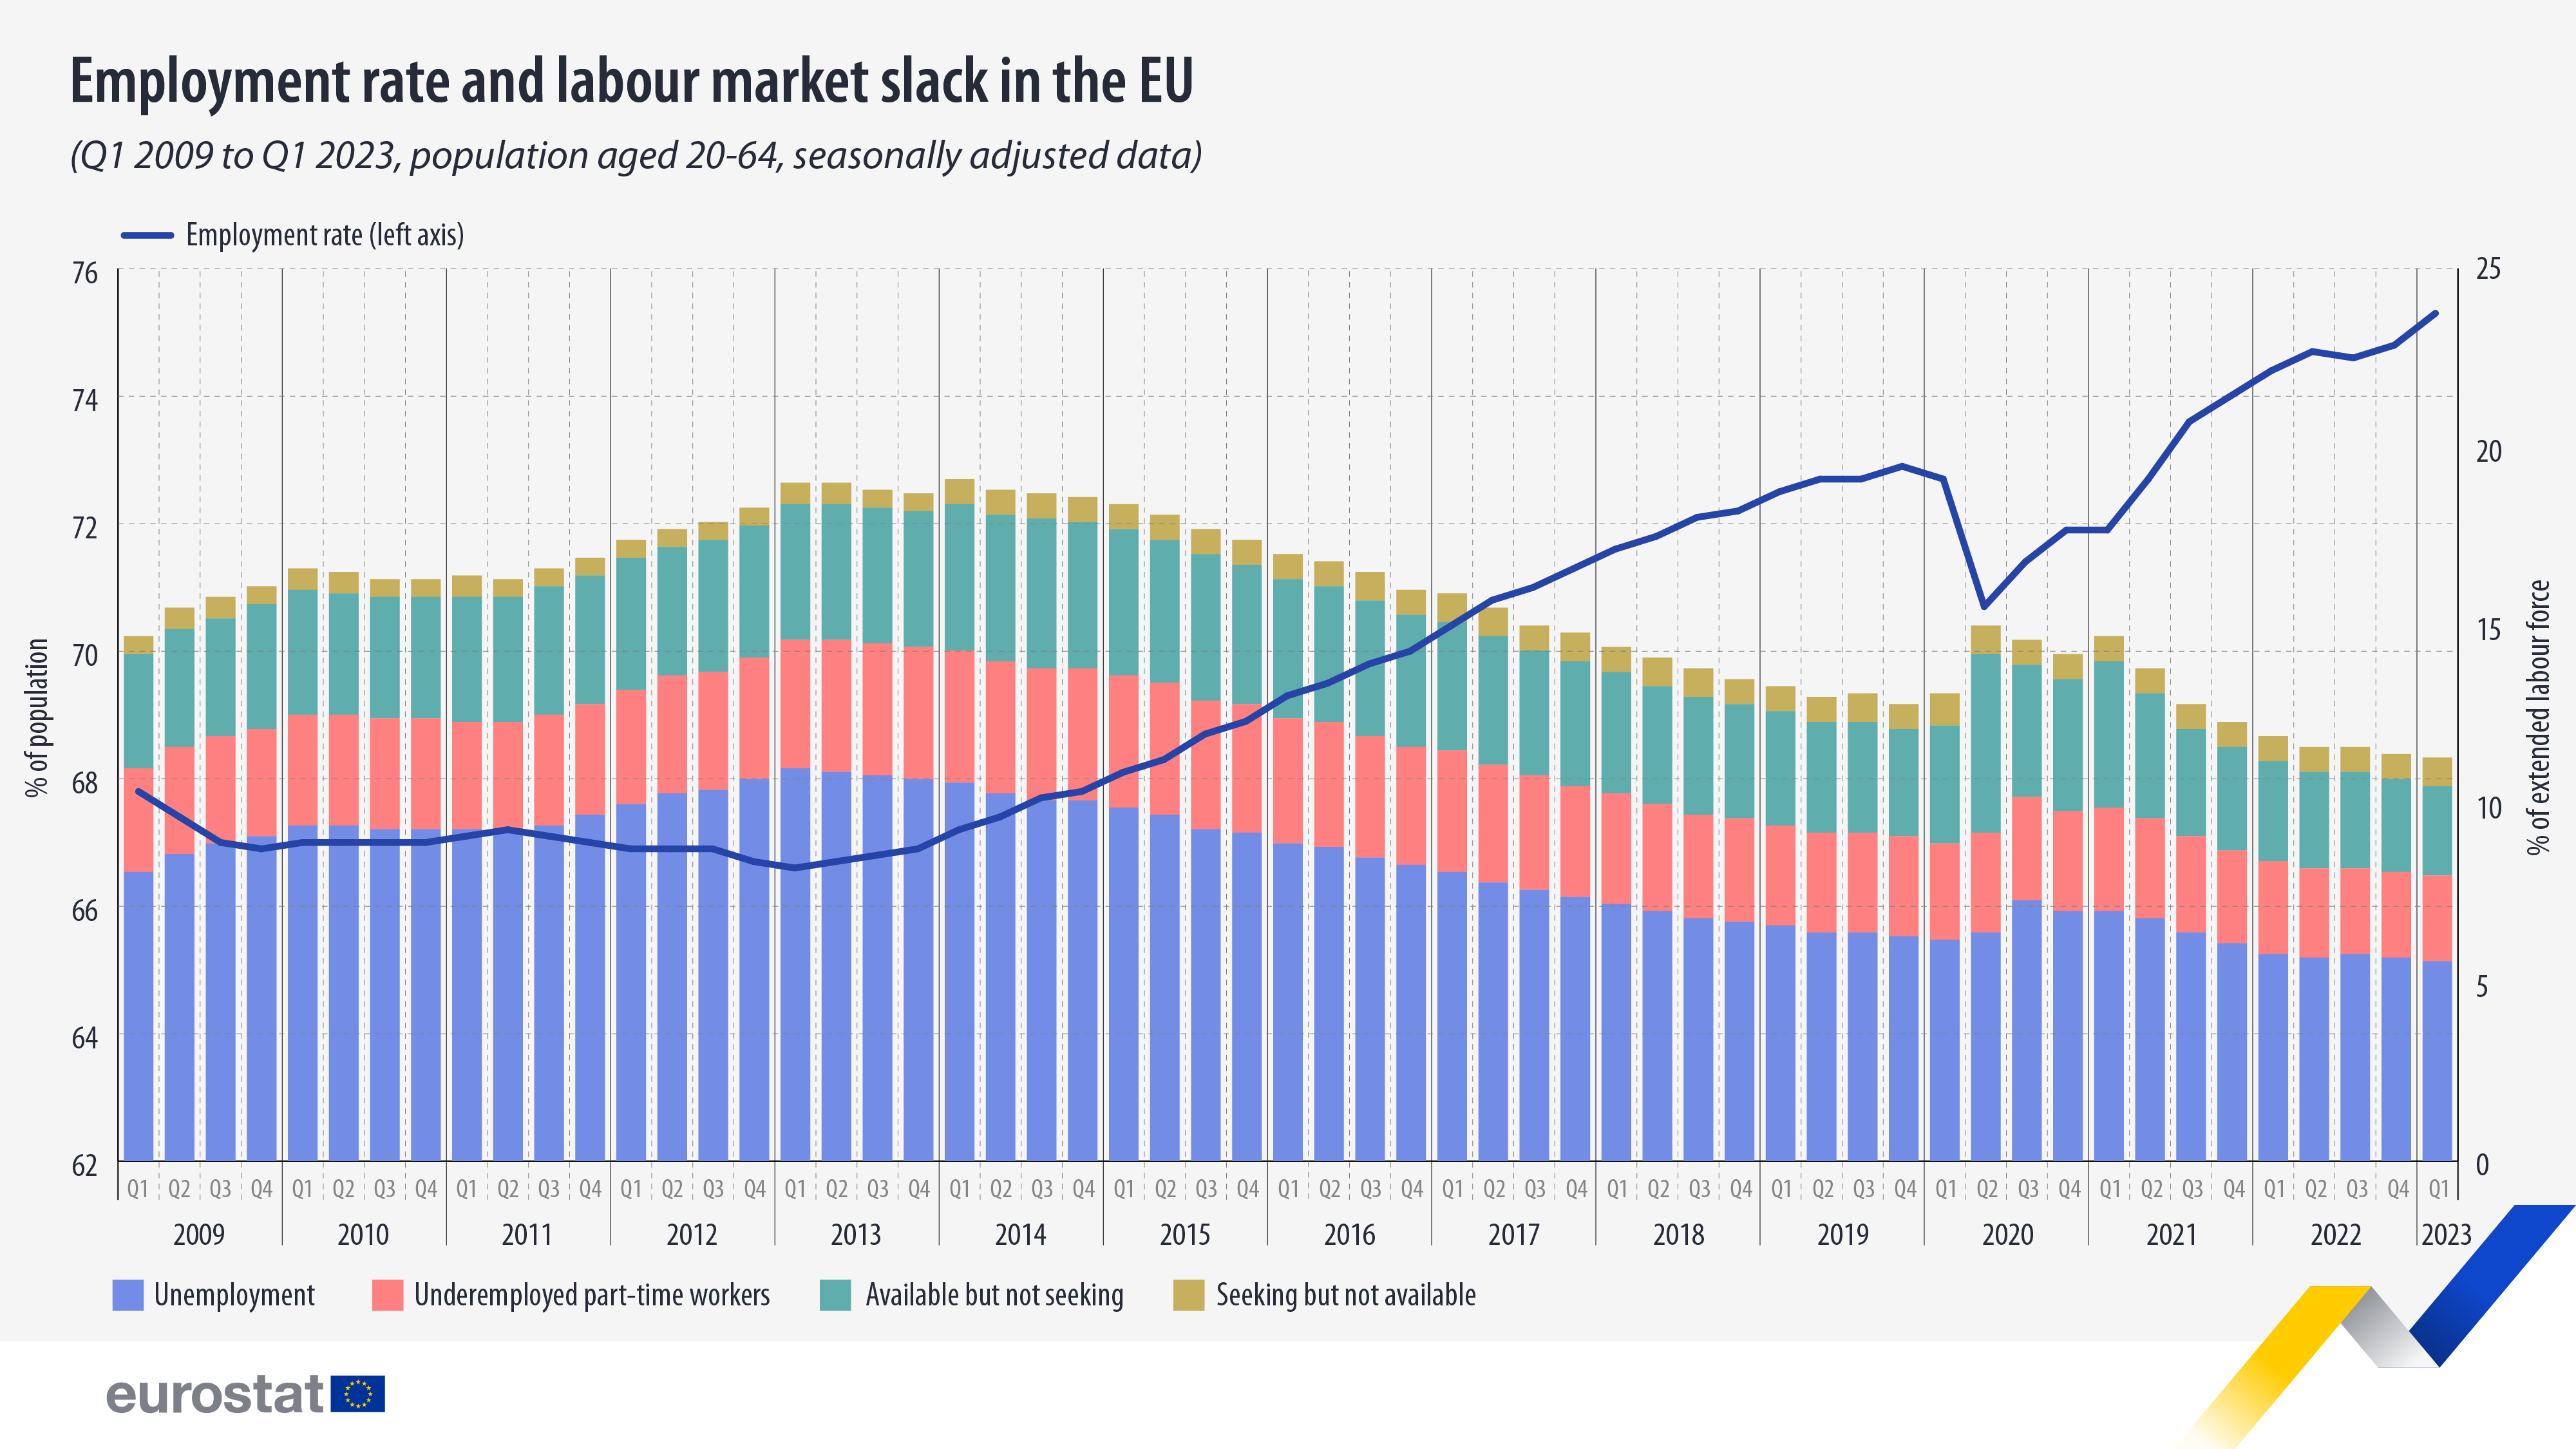 Γράφημα ράβδων: Ποσοστό απασχόλησης και χαλάρωση της αγοράς εργασίας στην ΕΕ, πληθυσμός ηλικίας 20-64 ετών, εποχικά προσαρμοσμένα δεδομένα, 1ο τρίμηνο 2009 έως 1ο τρίμηνο 2023